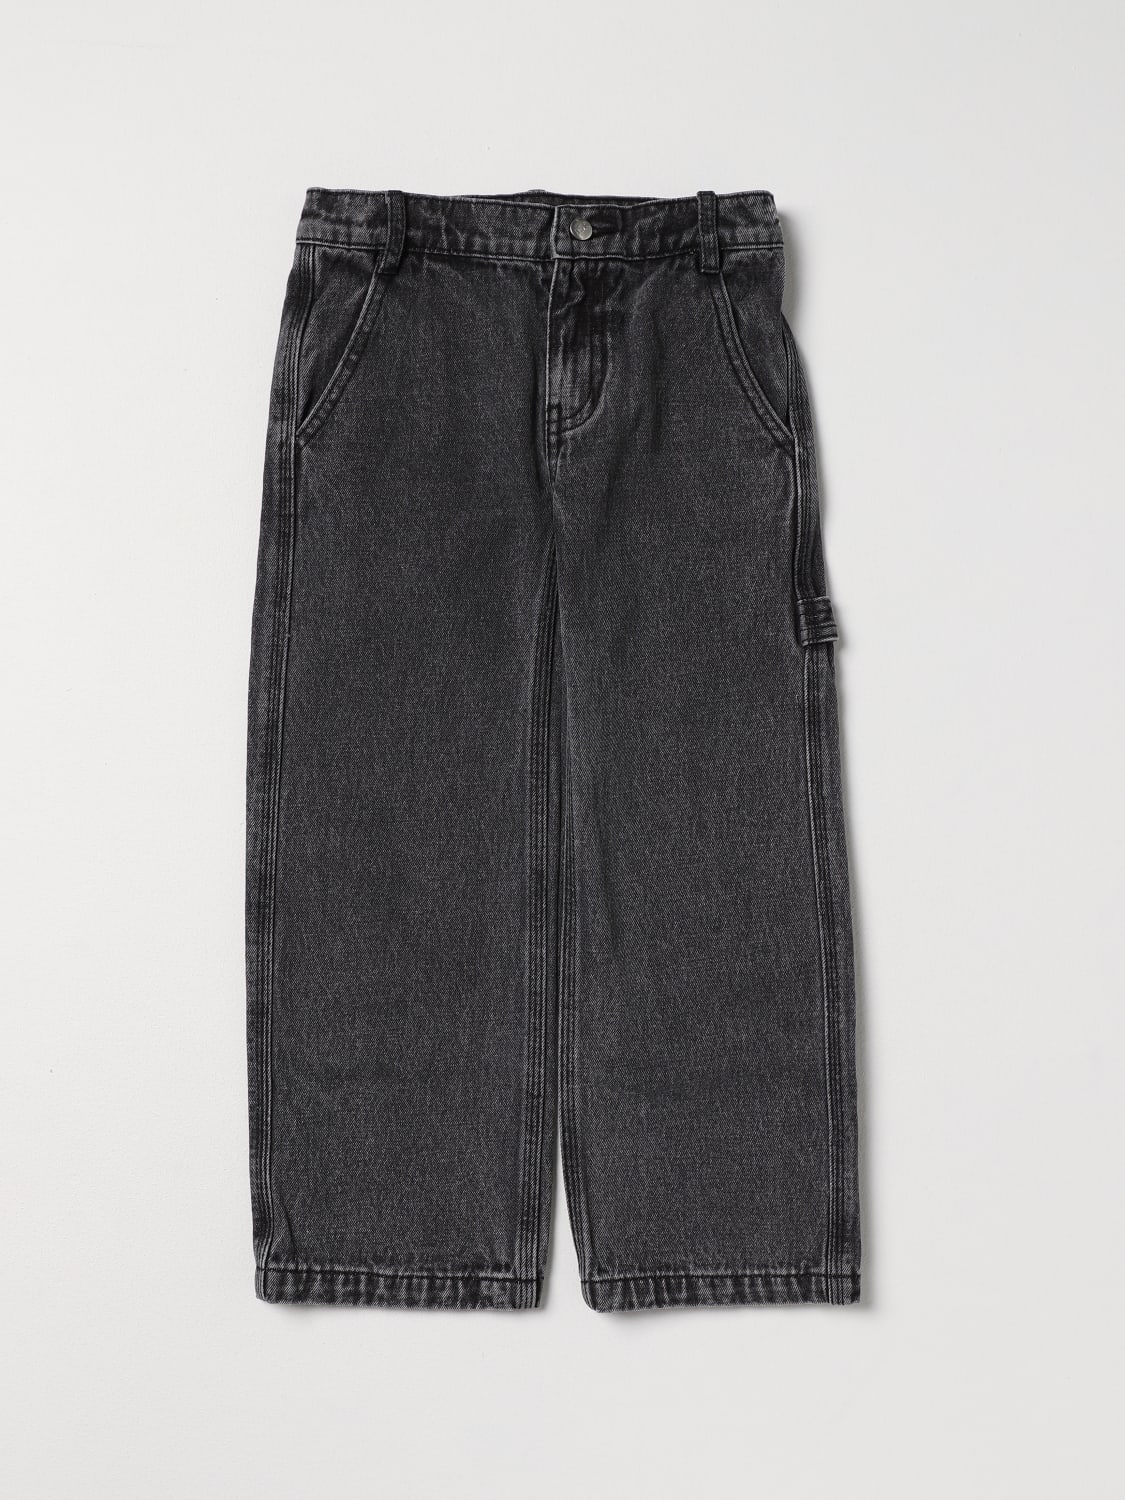 DKNY: Pants kids - Denim  DKNY jeans D34B15 online at